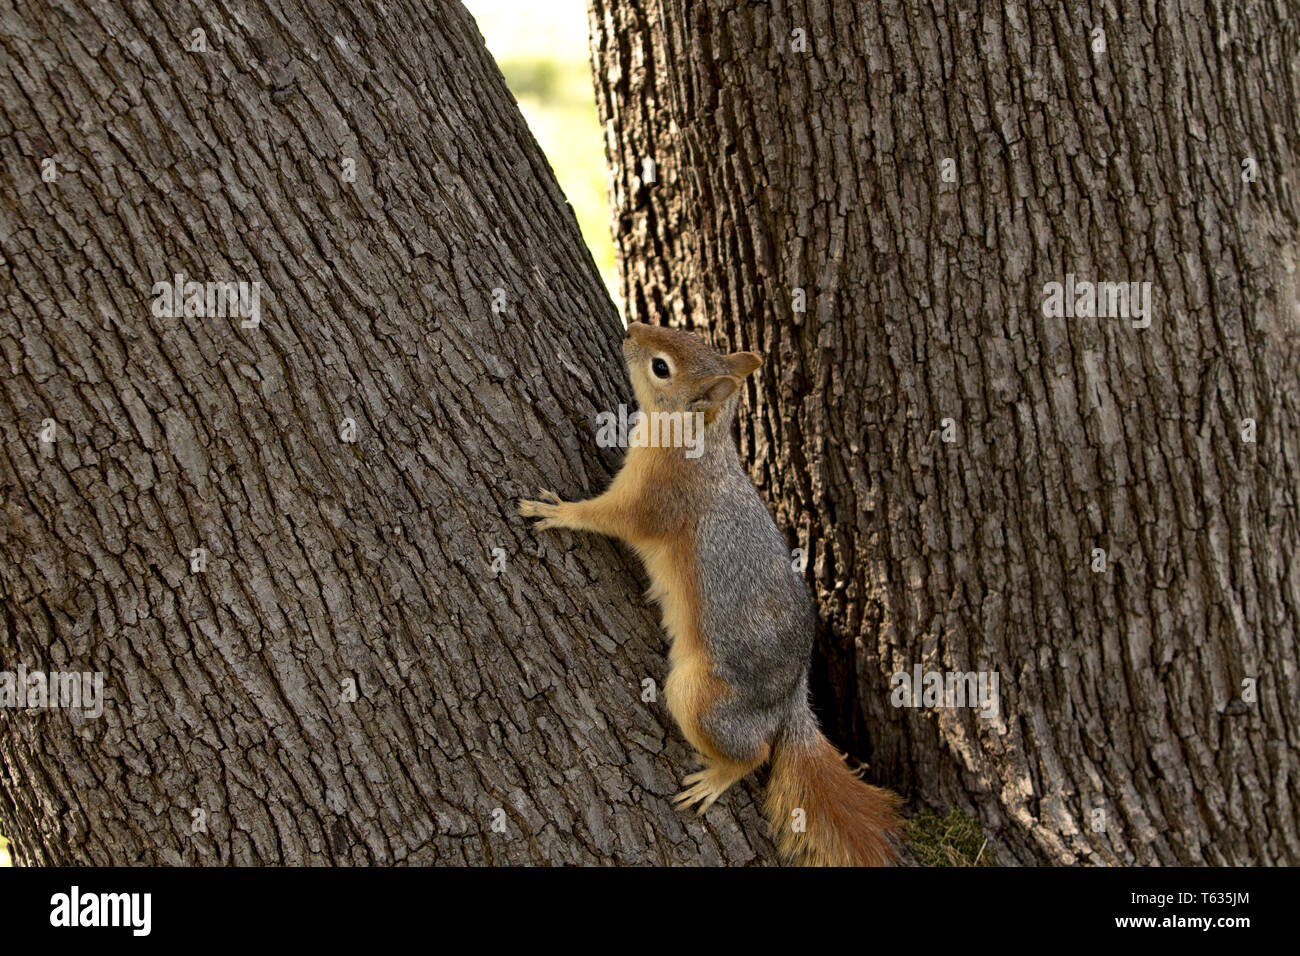 Close up portrait of a Sciurus Anomalus, Caucasian squirrel climbing a tree. Stock Photo